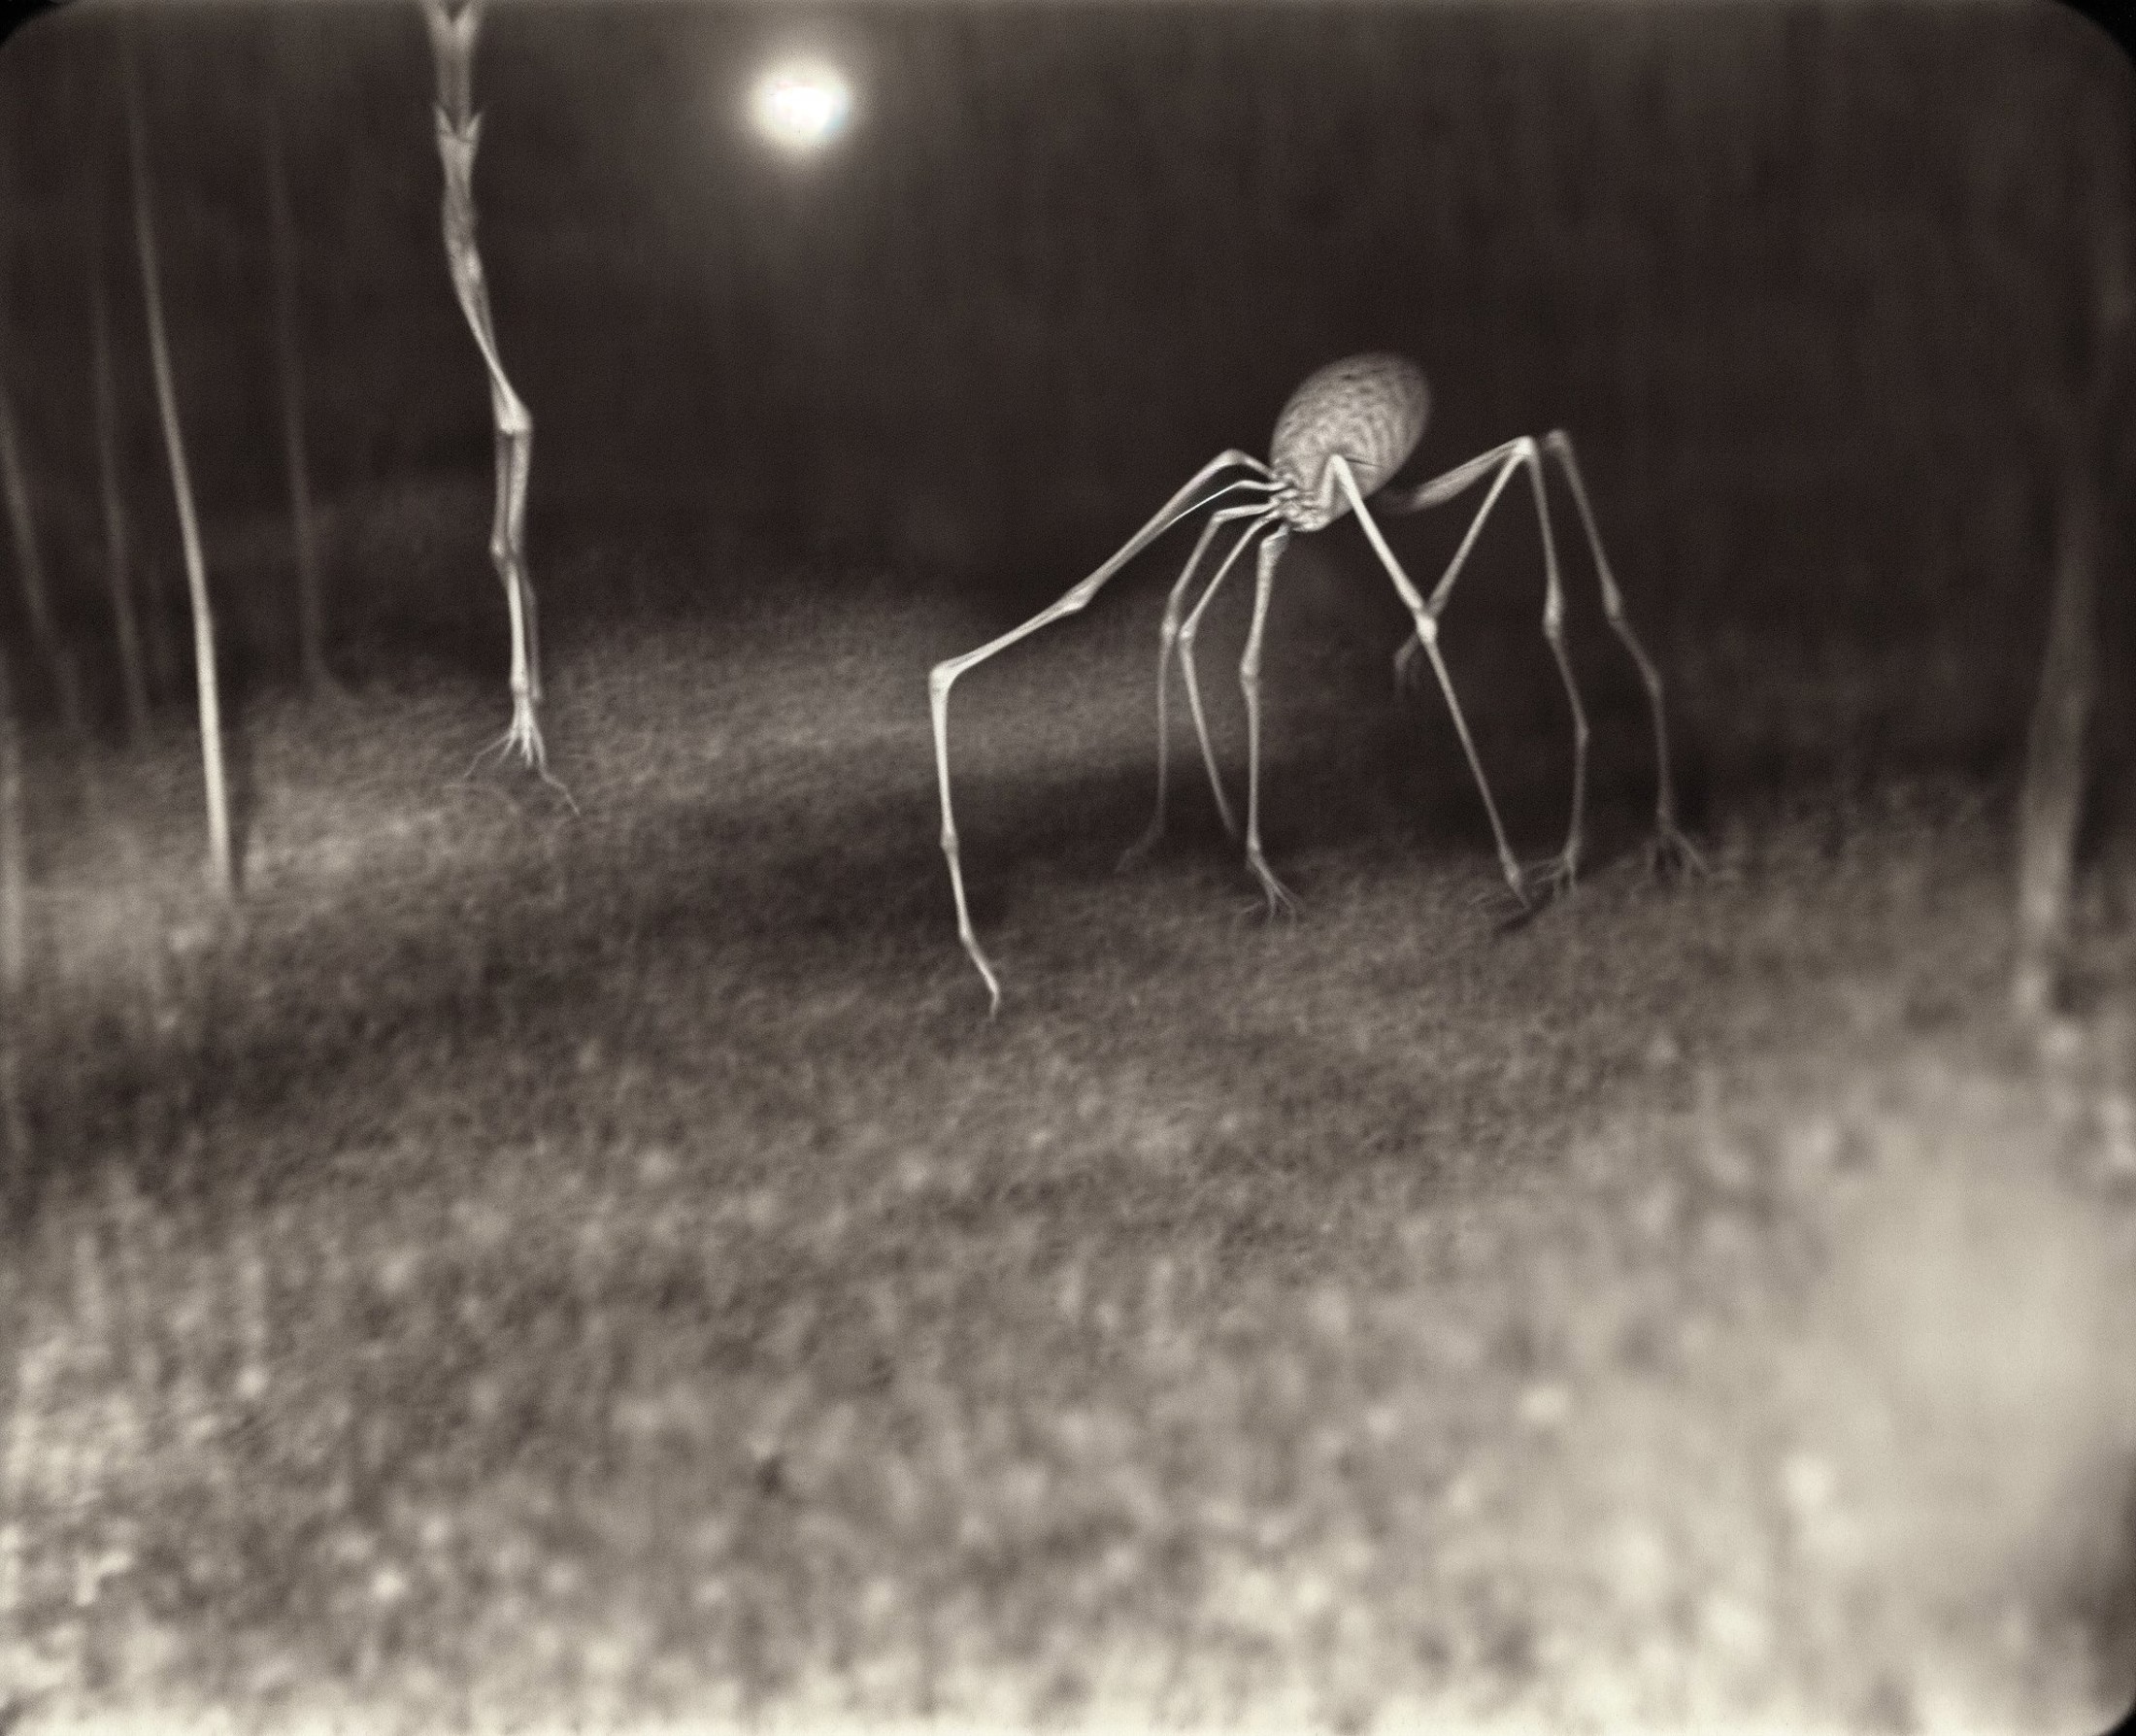 01431-4215141676-a creepy looking spider in the dark, photo of scp-173, slender, slenderman,  _lora_deathia_yiu_v20_0.7_, noise, noir, sepia, low.jpg